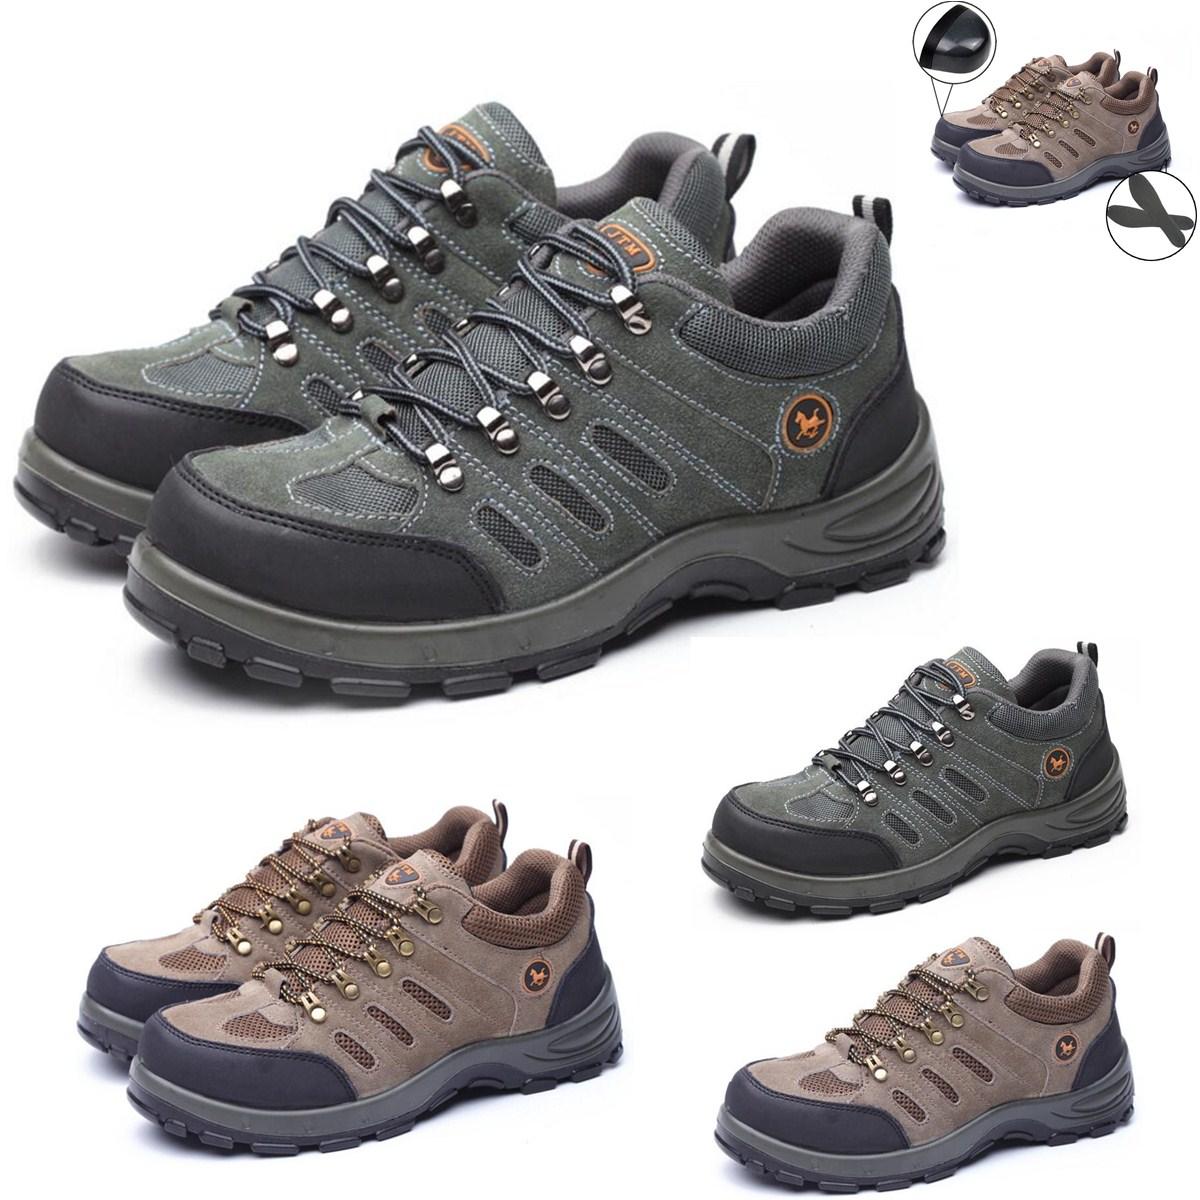 Sapatos de segurança masculinos TENGOO, com biqueira de aço, respiráveis, para escalada, caminhada e trabalho ao ar livre.